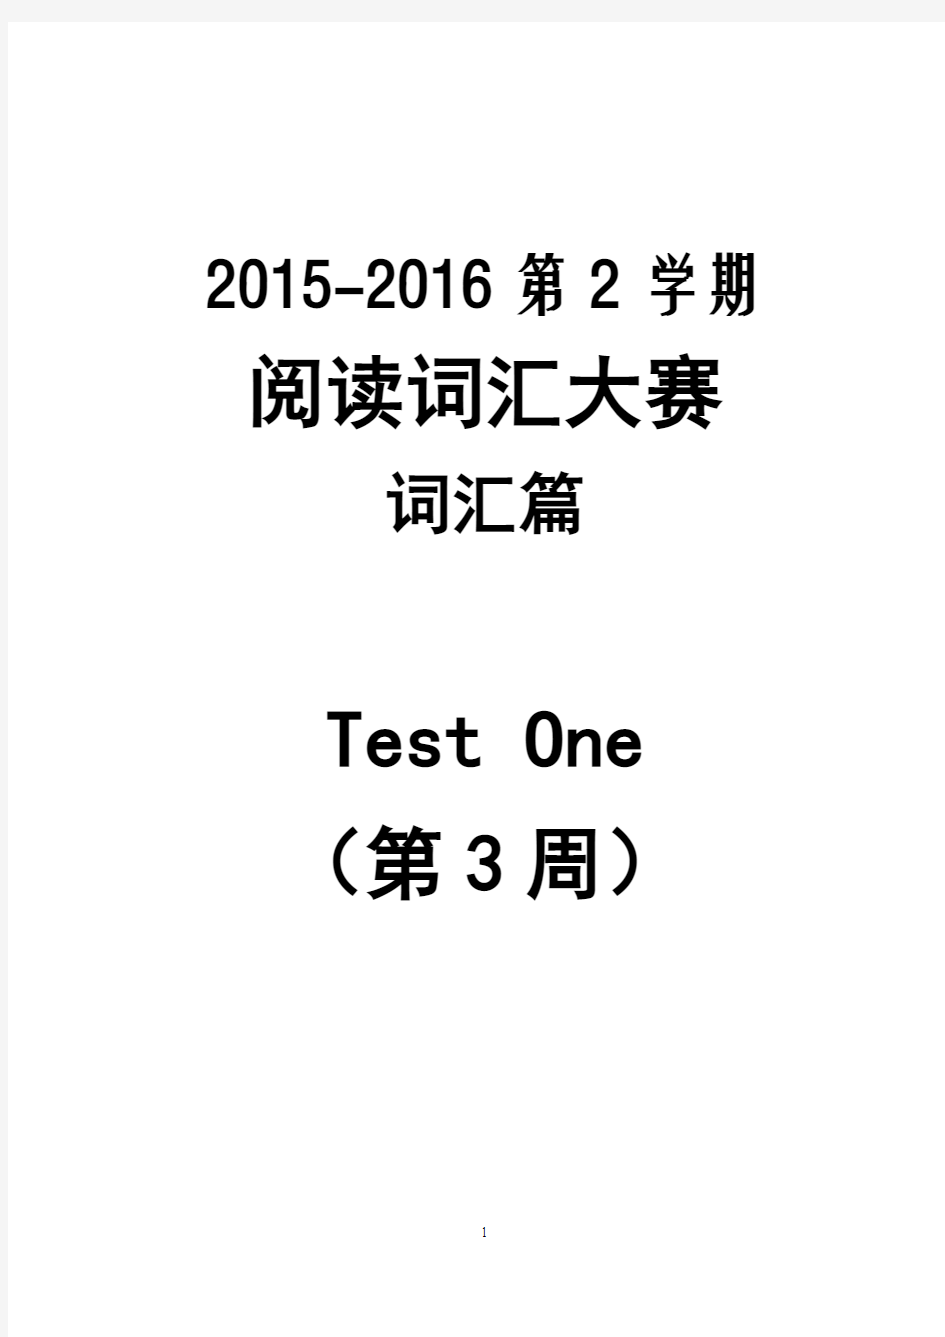 2015-2016-2 阅读词汇大赛(词汇篇) Test1